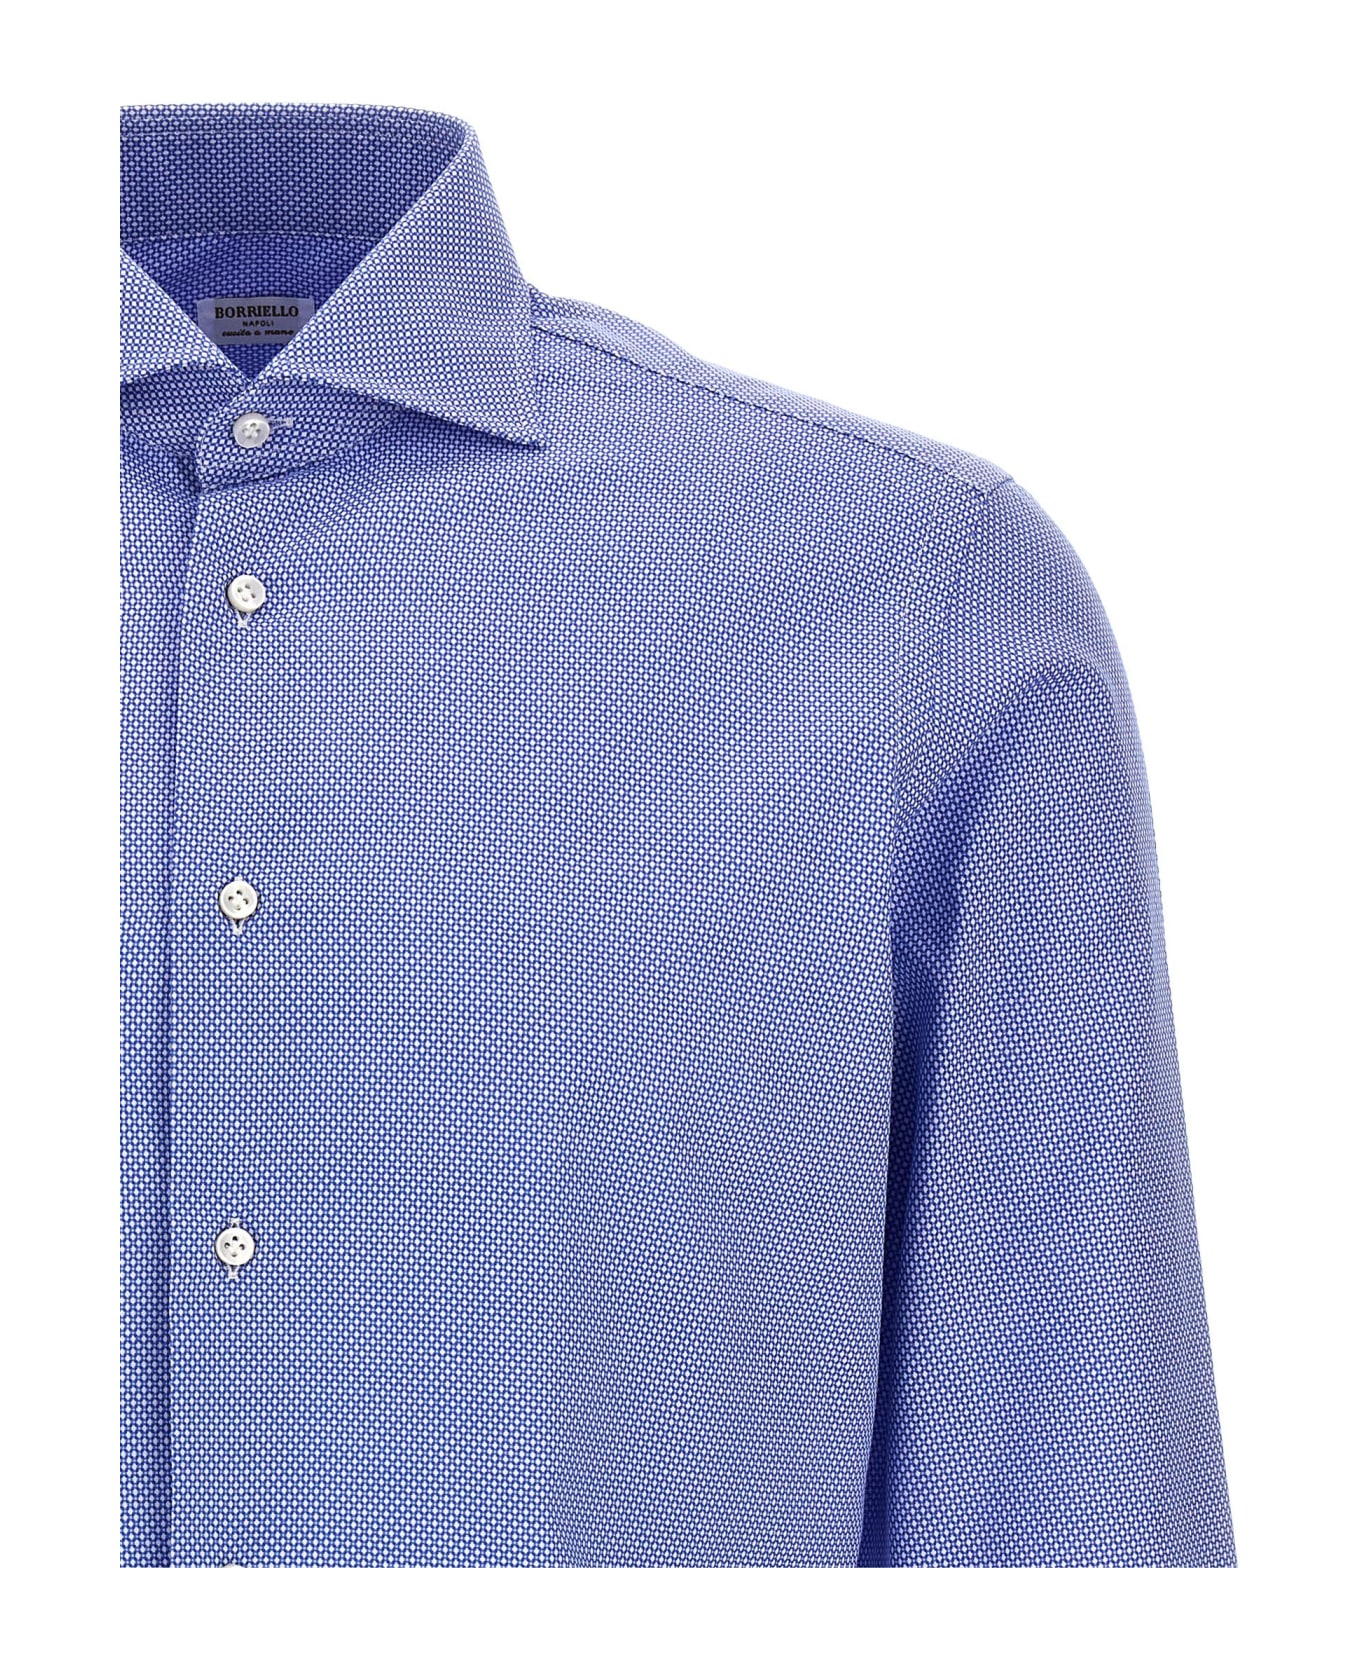 Borriello Napoli Micro Operated Shirt - Light Blue シャツ